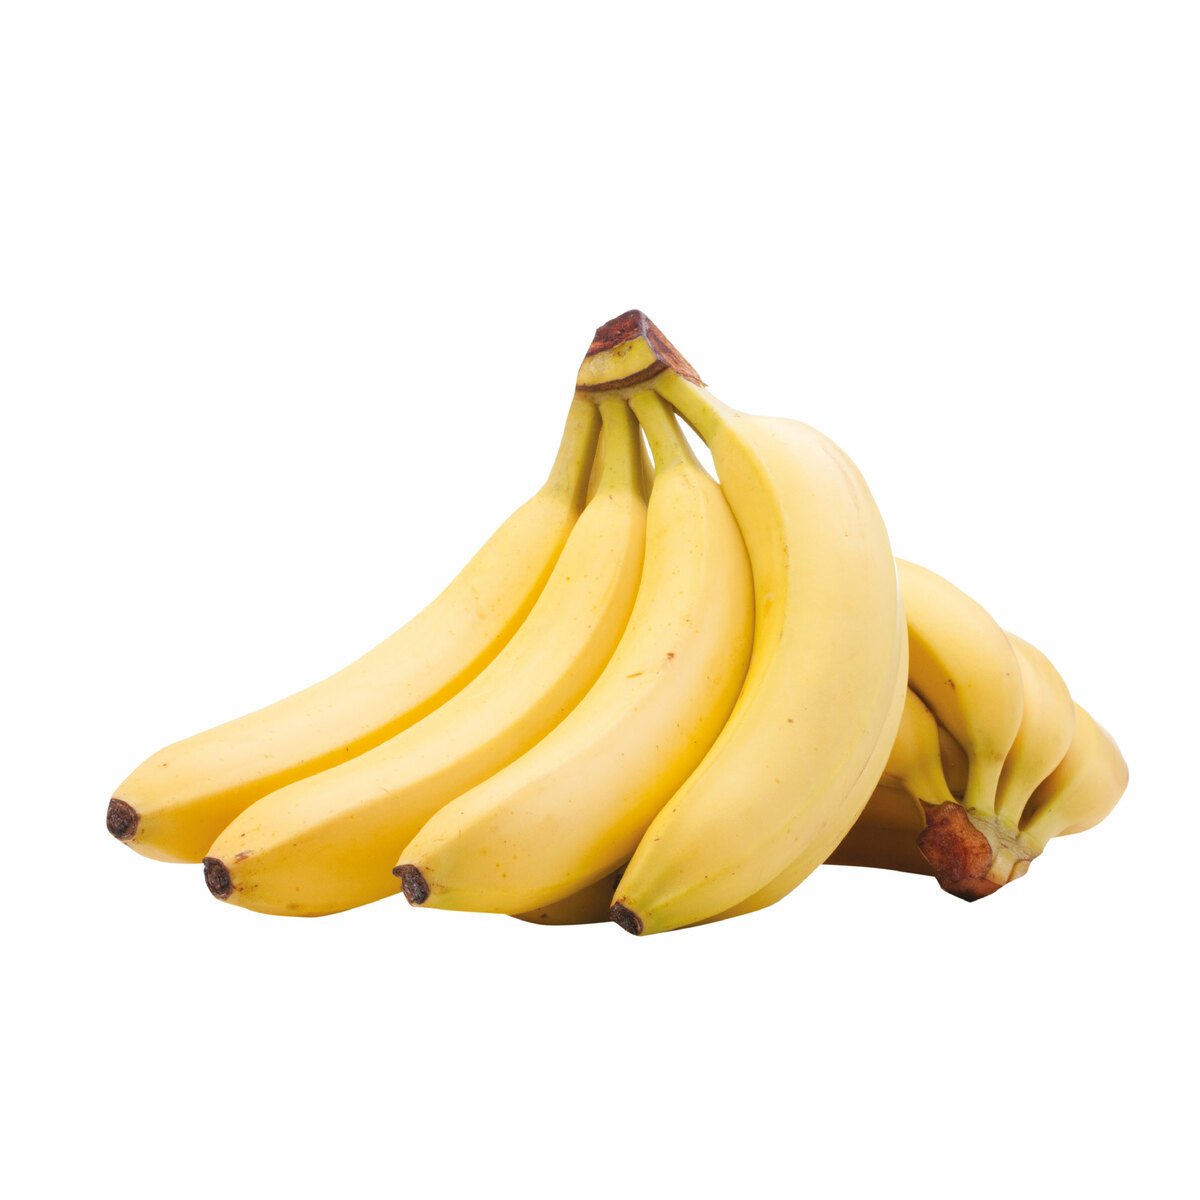 Banana Ecuador 1 kg